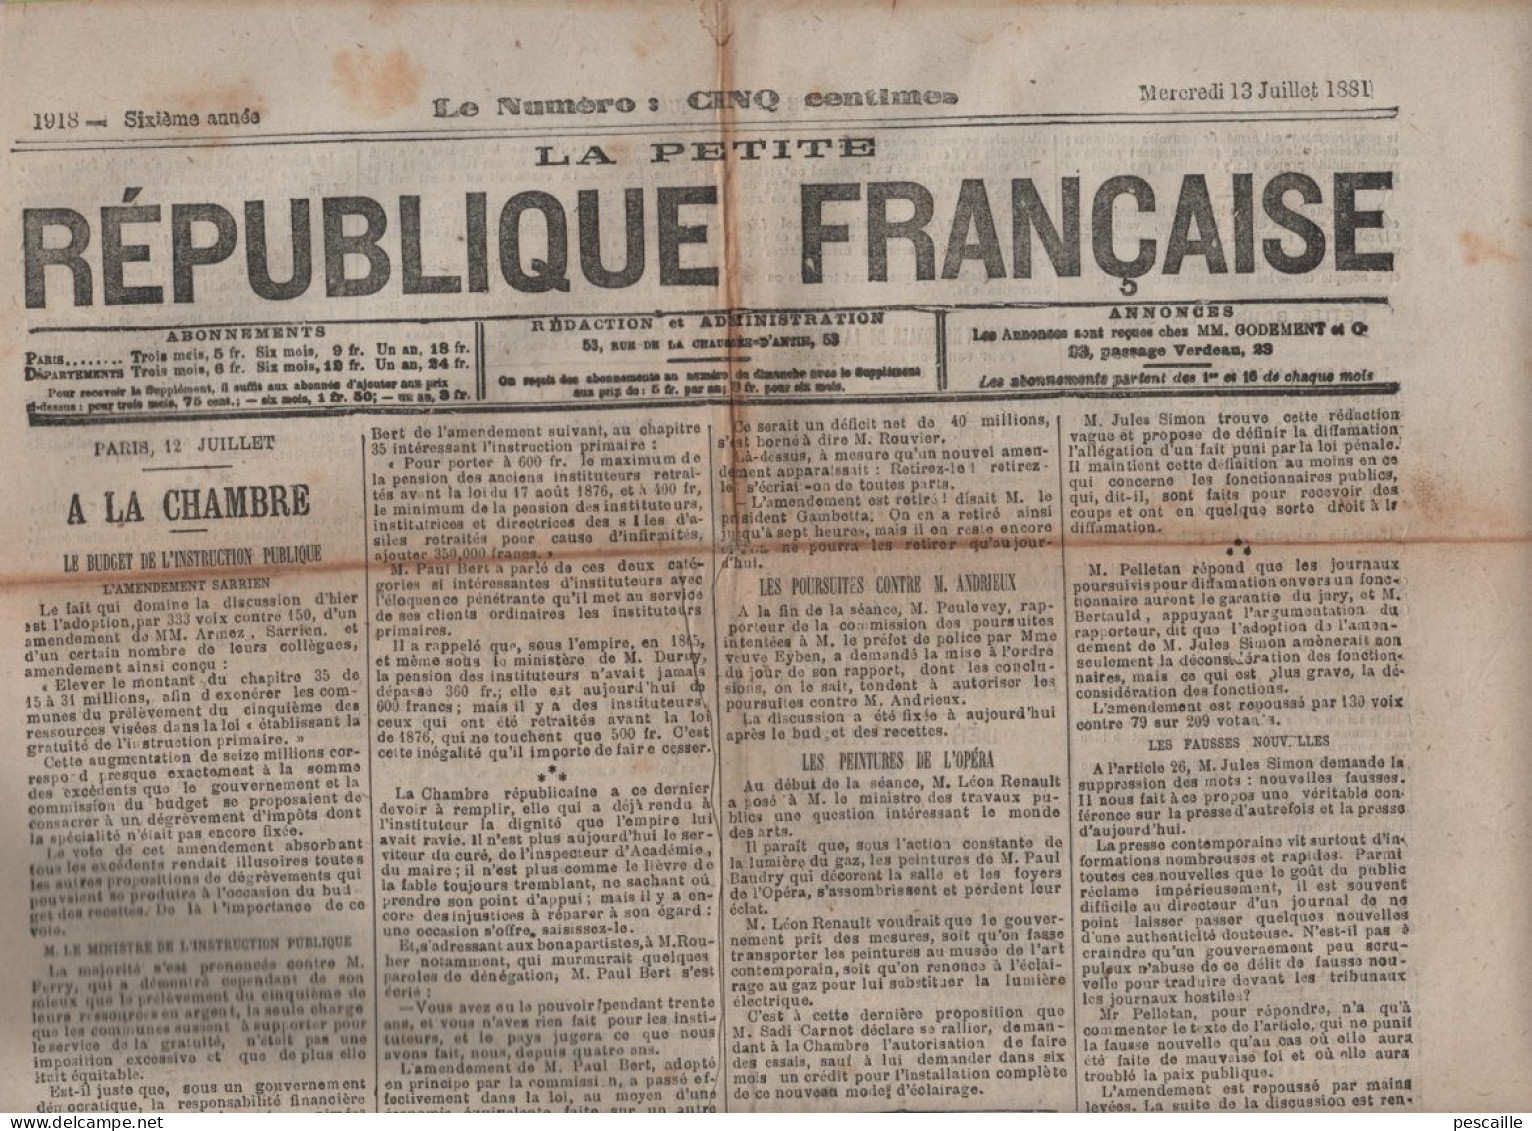 LA PETITE REPUBLIQUE FRANCAISE 13 07 1881 - BUDGET INSTRUCTION PUBLIQUE - PEINTURES OPERA - LOI SUR LA PRESSE - TUNISIE - 1850 - 1899